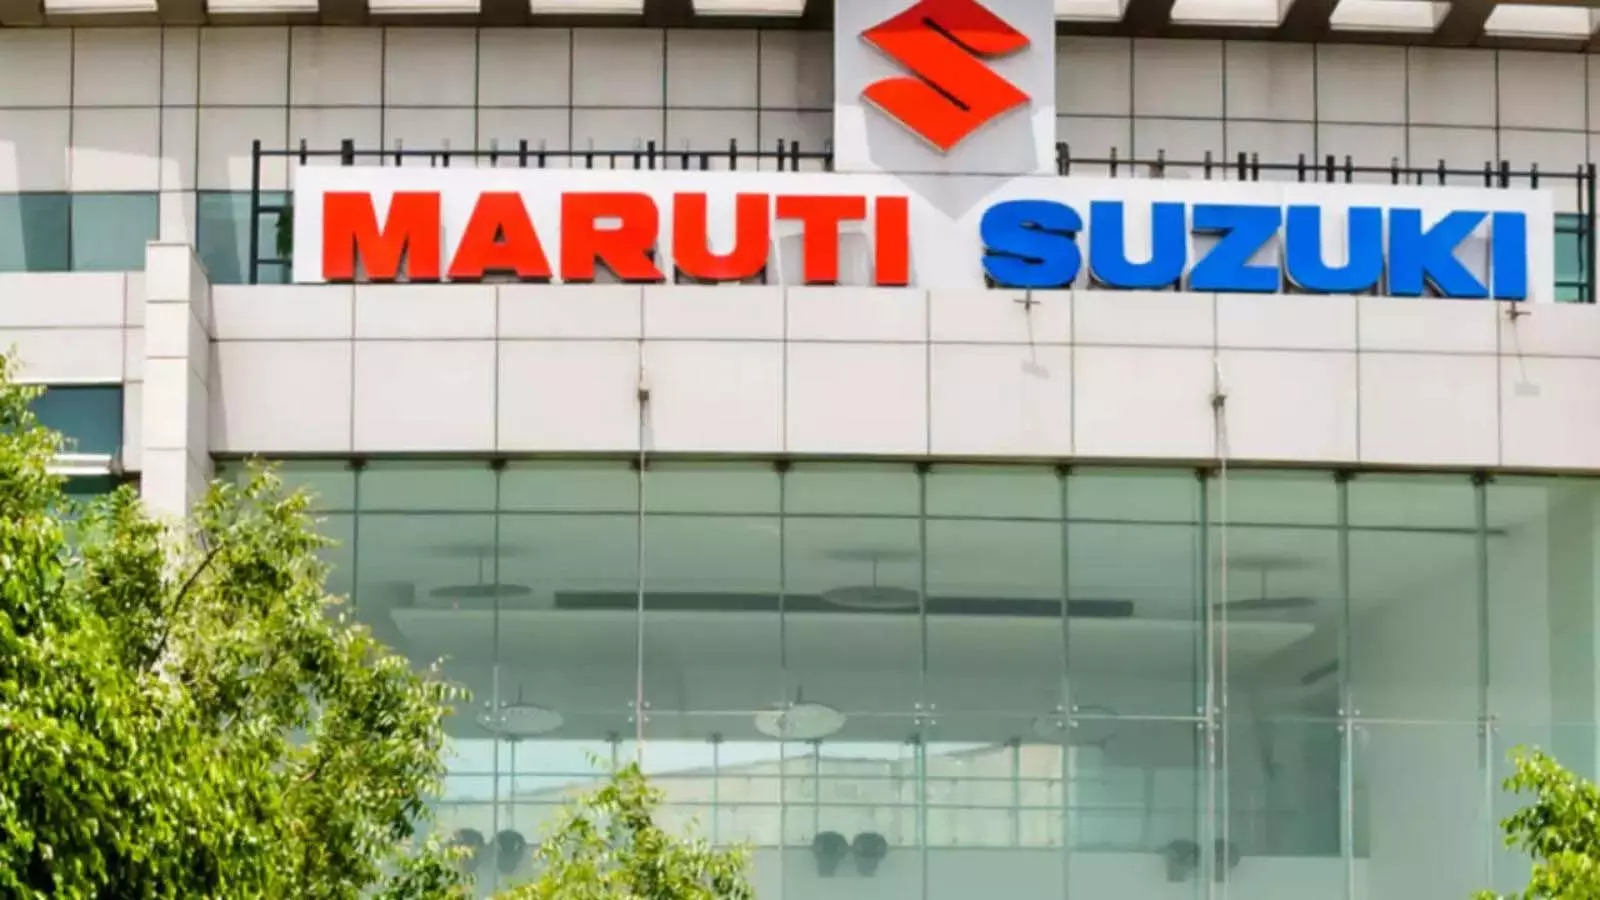 Maruti Suzuki को विकास की राह पर बनाए रखने की संभावना